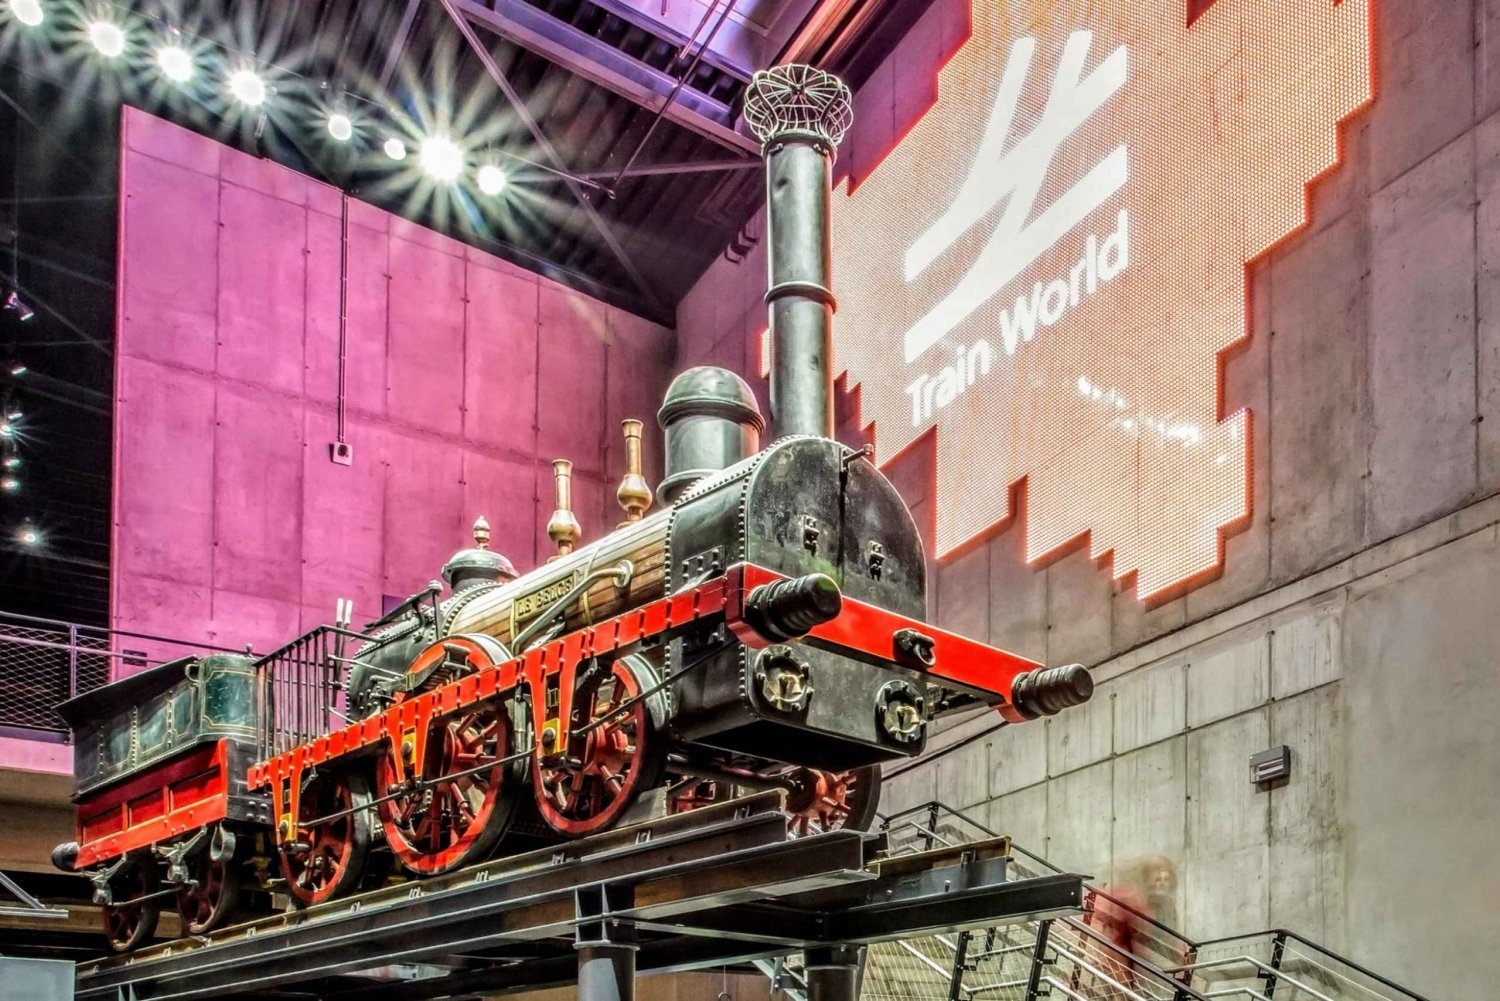 Train World Museum, Brussel: Inngangsbillett